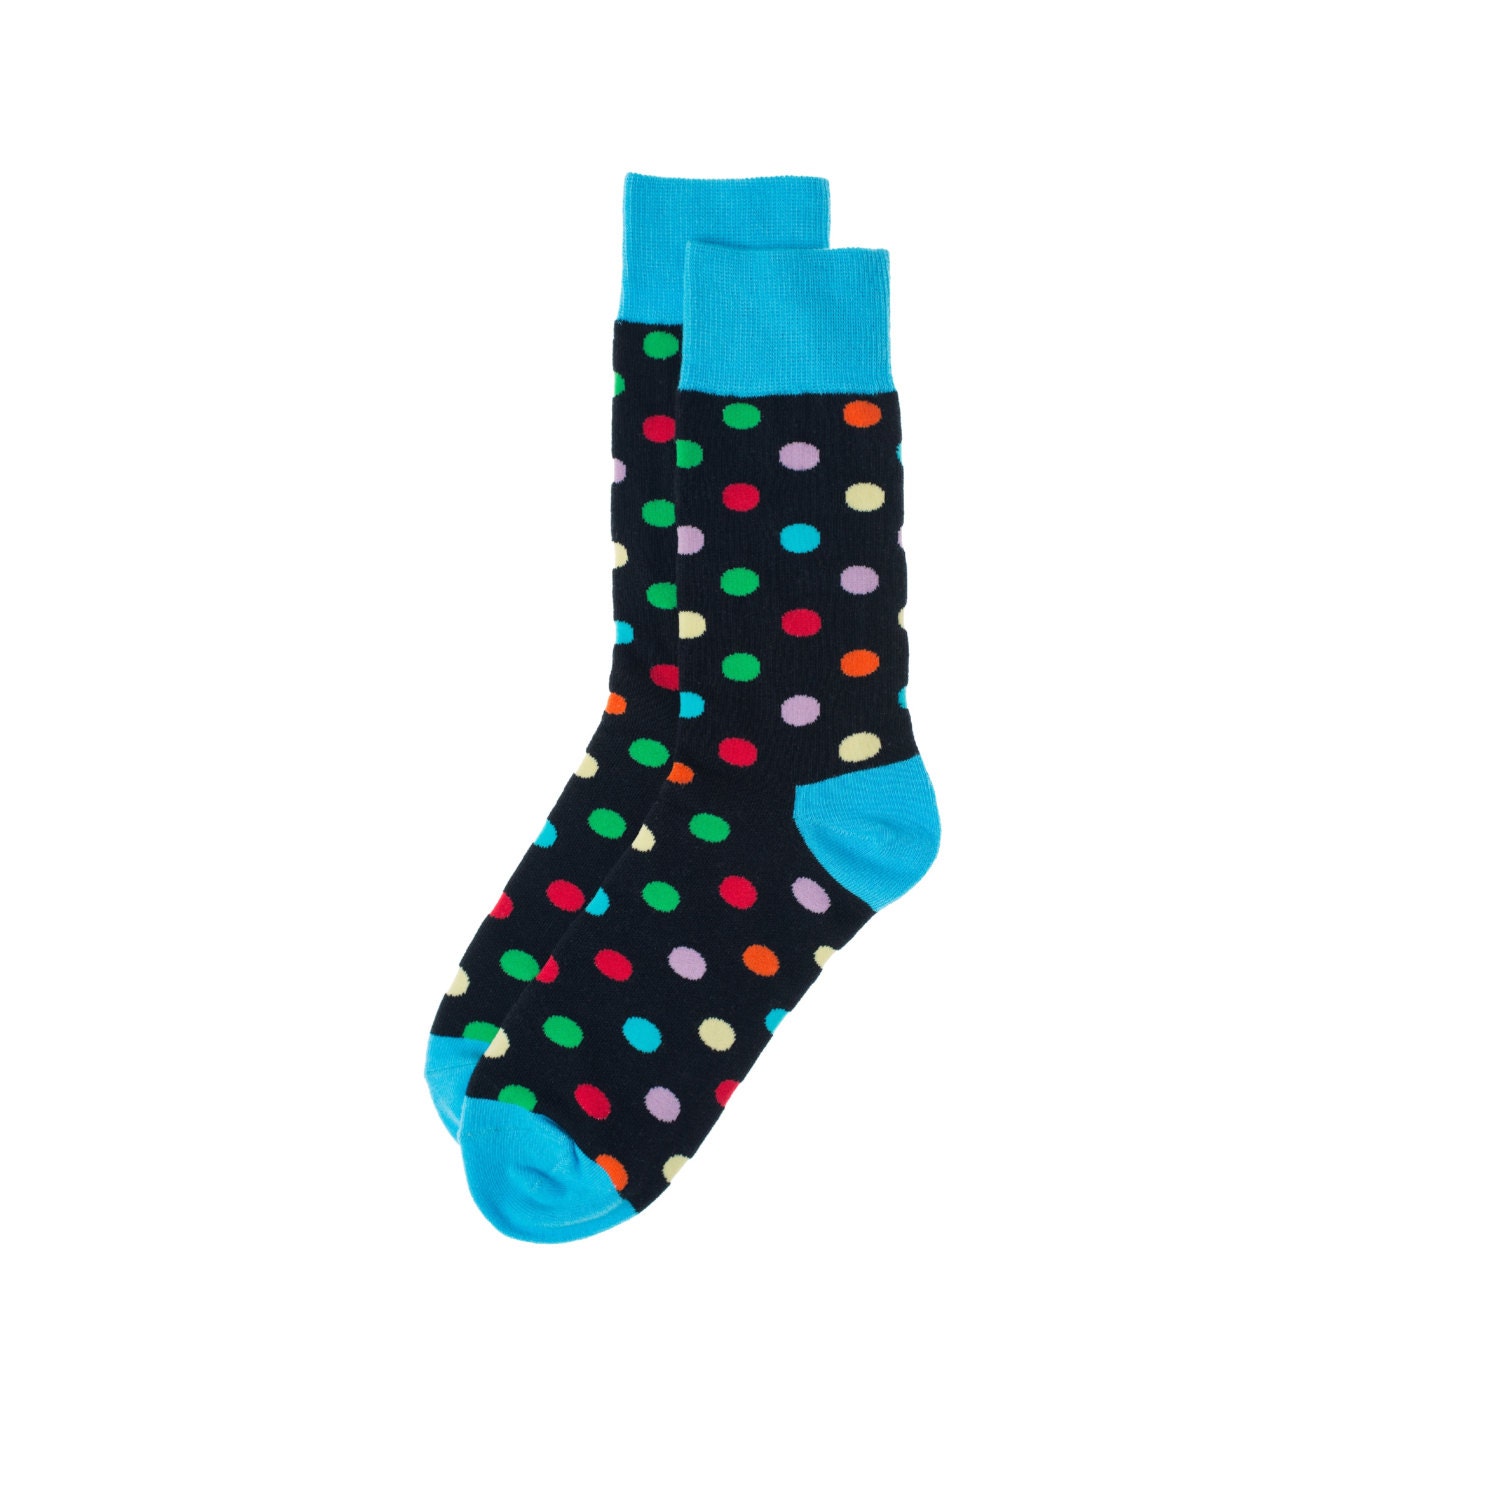 Mens Sock Mens Dress Socks Groomsmen Socks Colorful Socks | Etsy